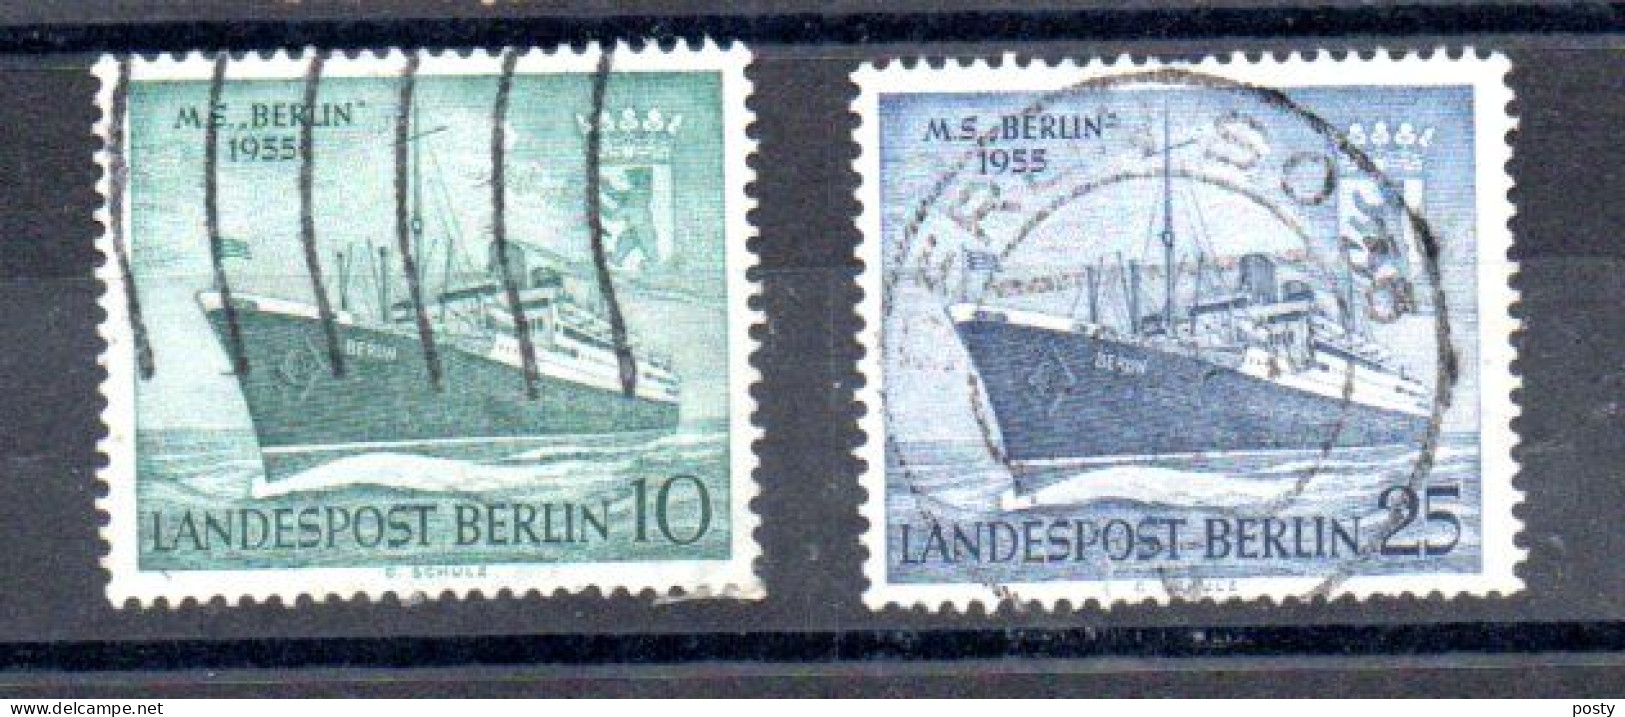 ALLEMAGNE - GERMANY - BERLIN - 1955 - M.S BERLIN - PAQUEBOT - SCHIFF - OCEANLINER - 10 + 25 - Oblitéré - Used - - Gebruikt